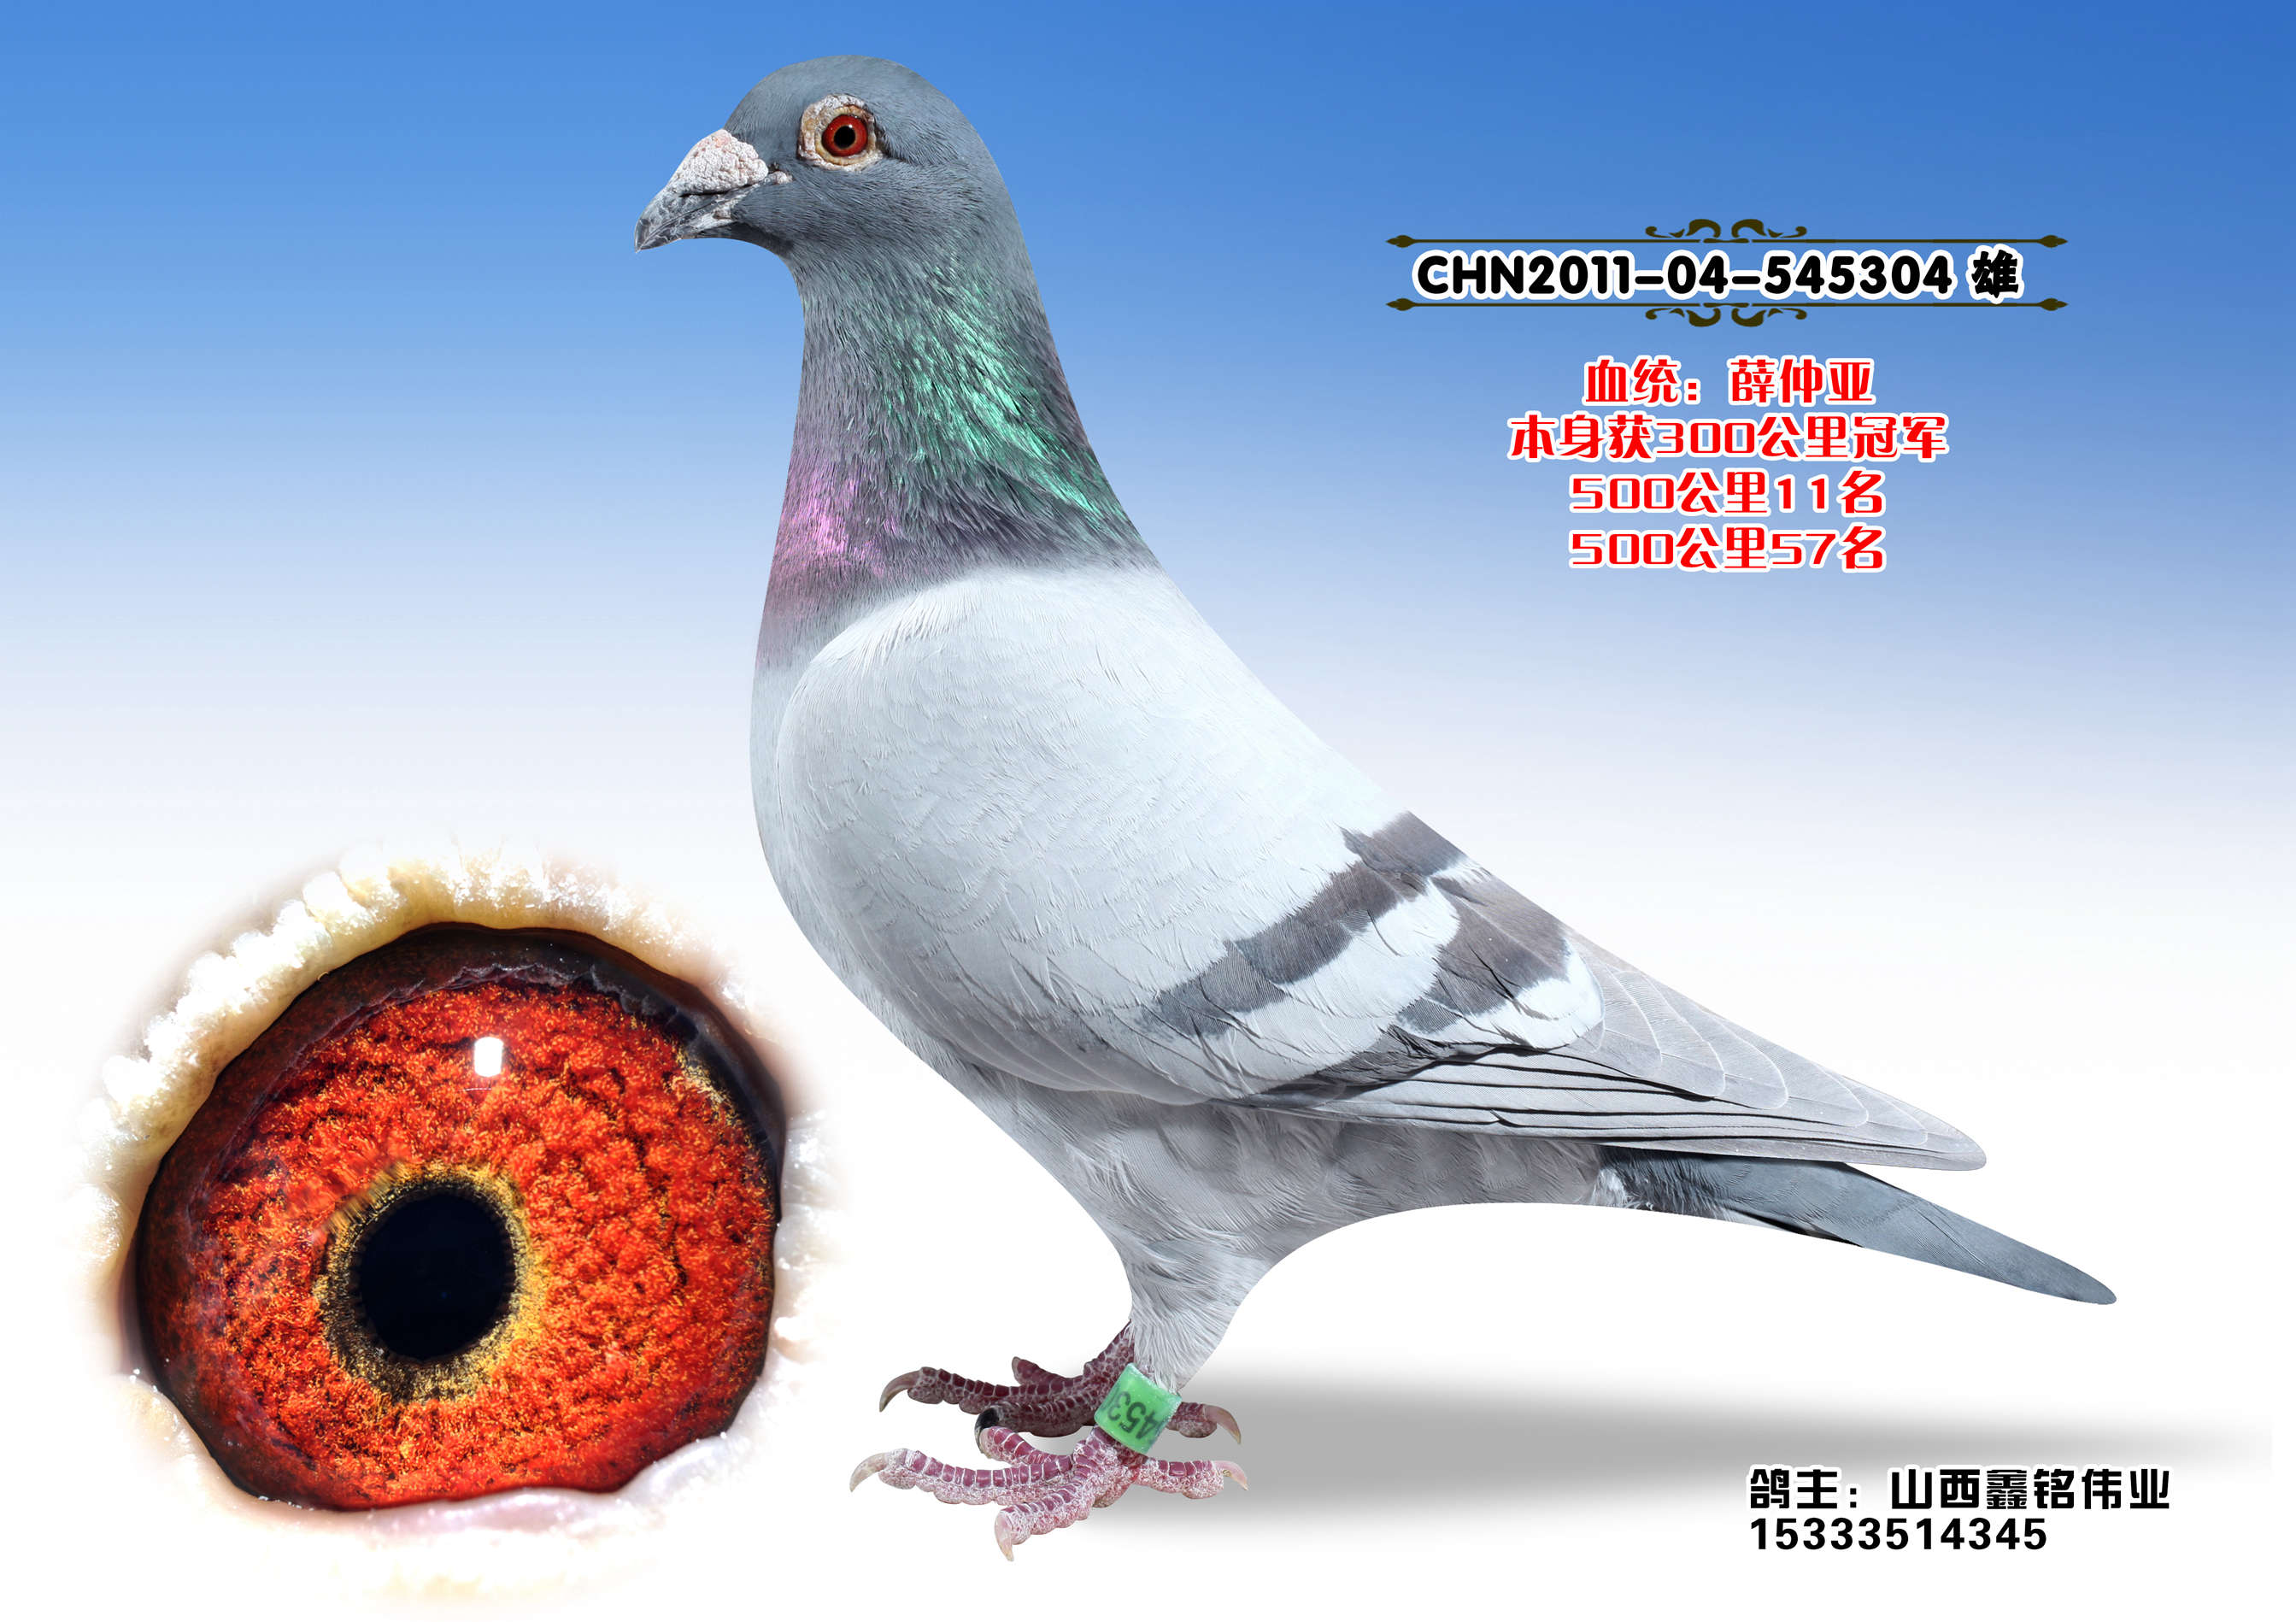 薛仲雅国际红公鸽系图片